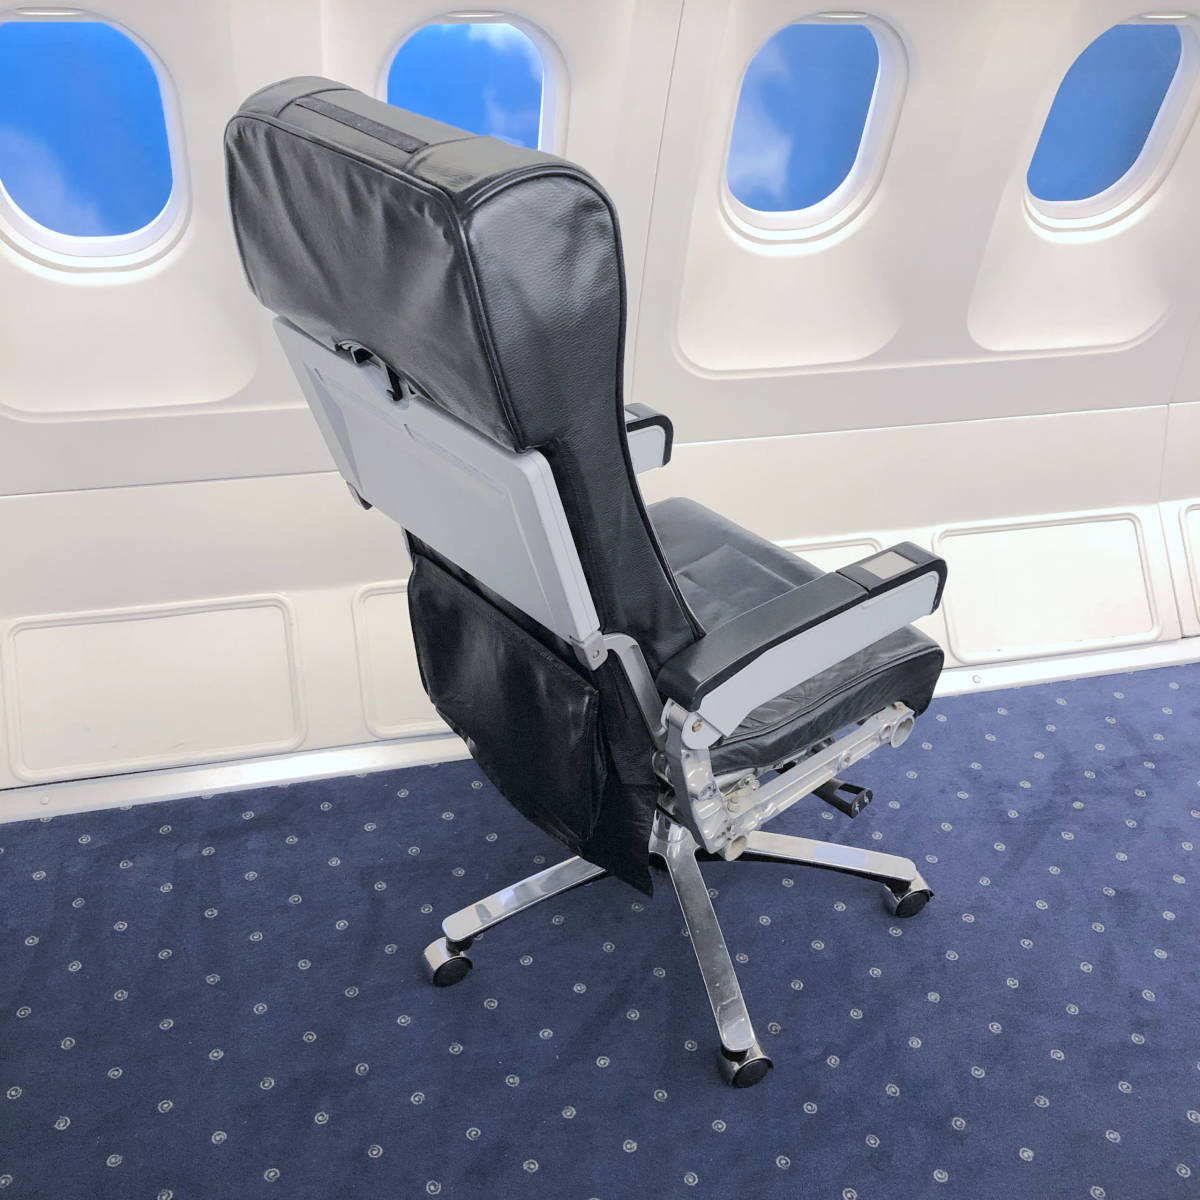 エコノミークラス座席 キャスター付き 飛行機 B737 Boeing トルコ航空 航空会社 ビジネス 椅子 レア